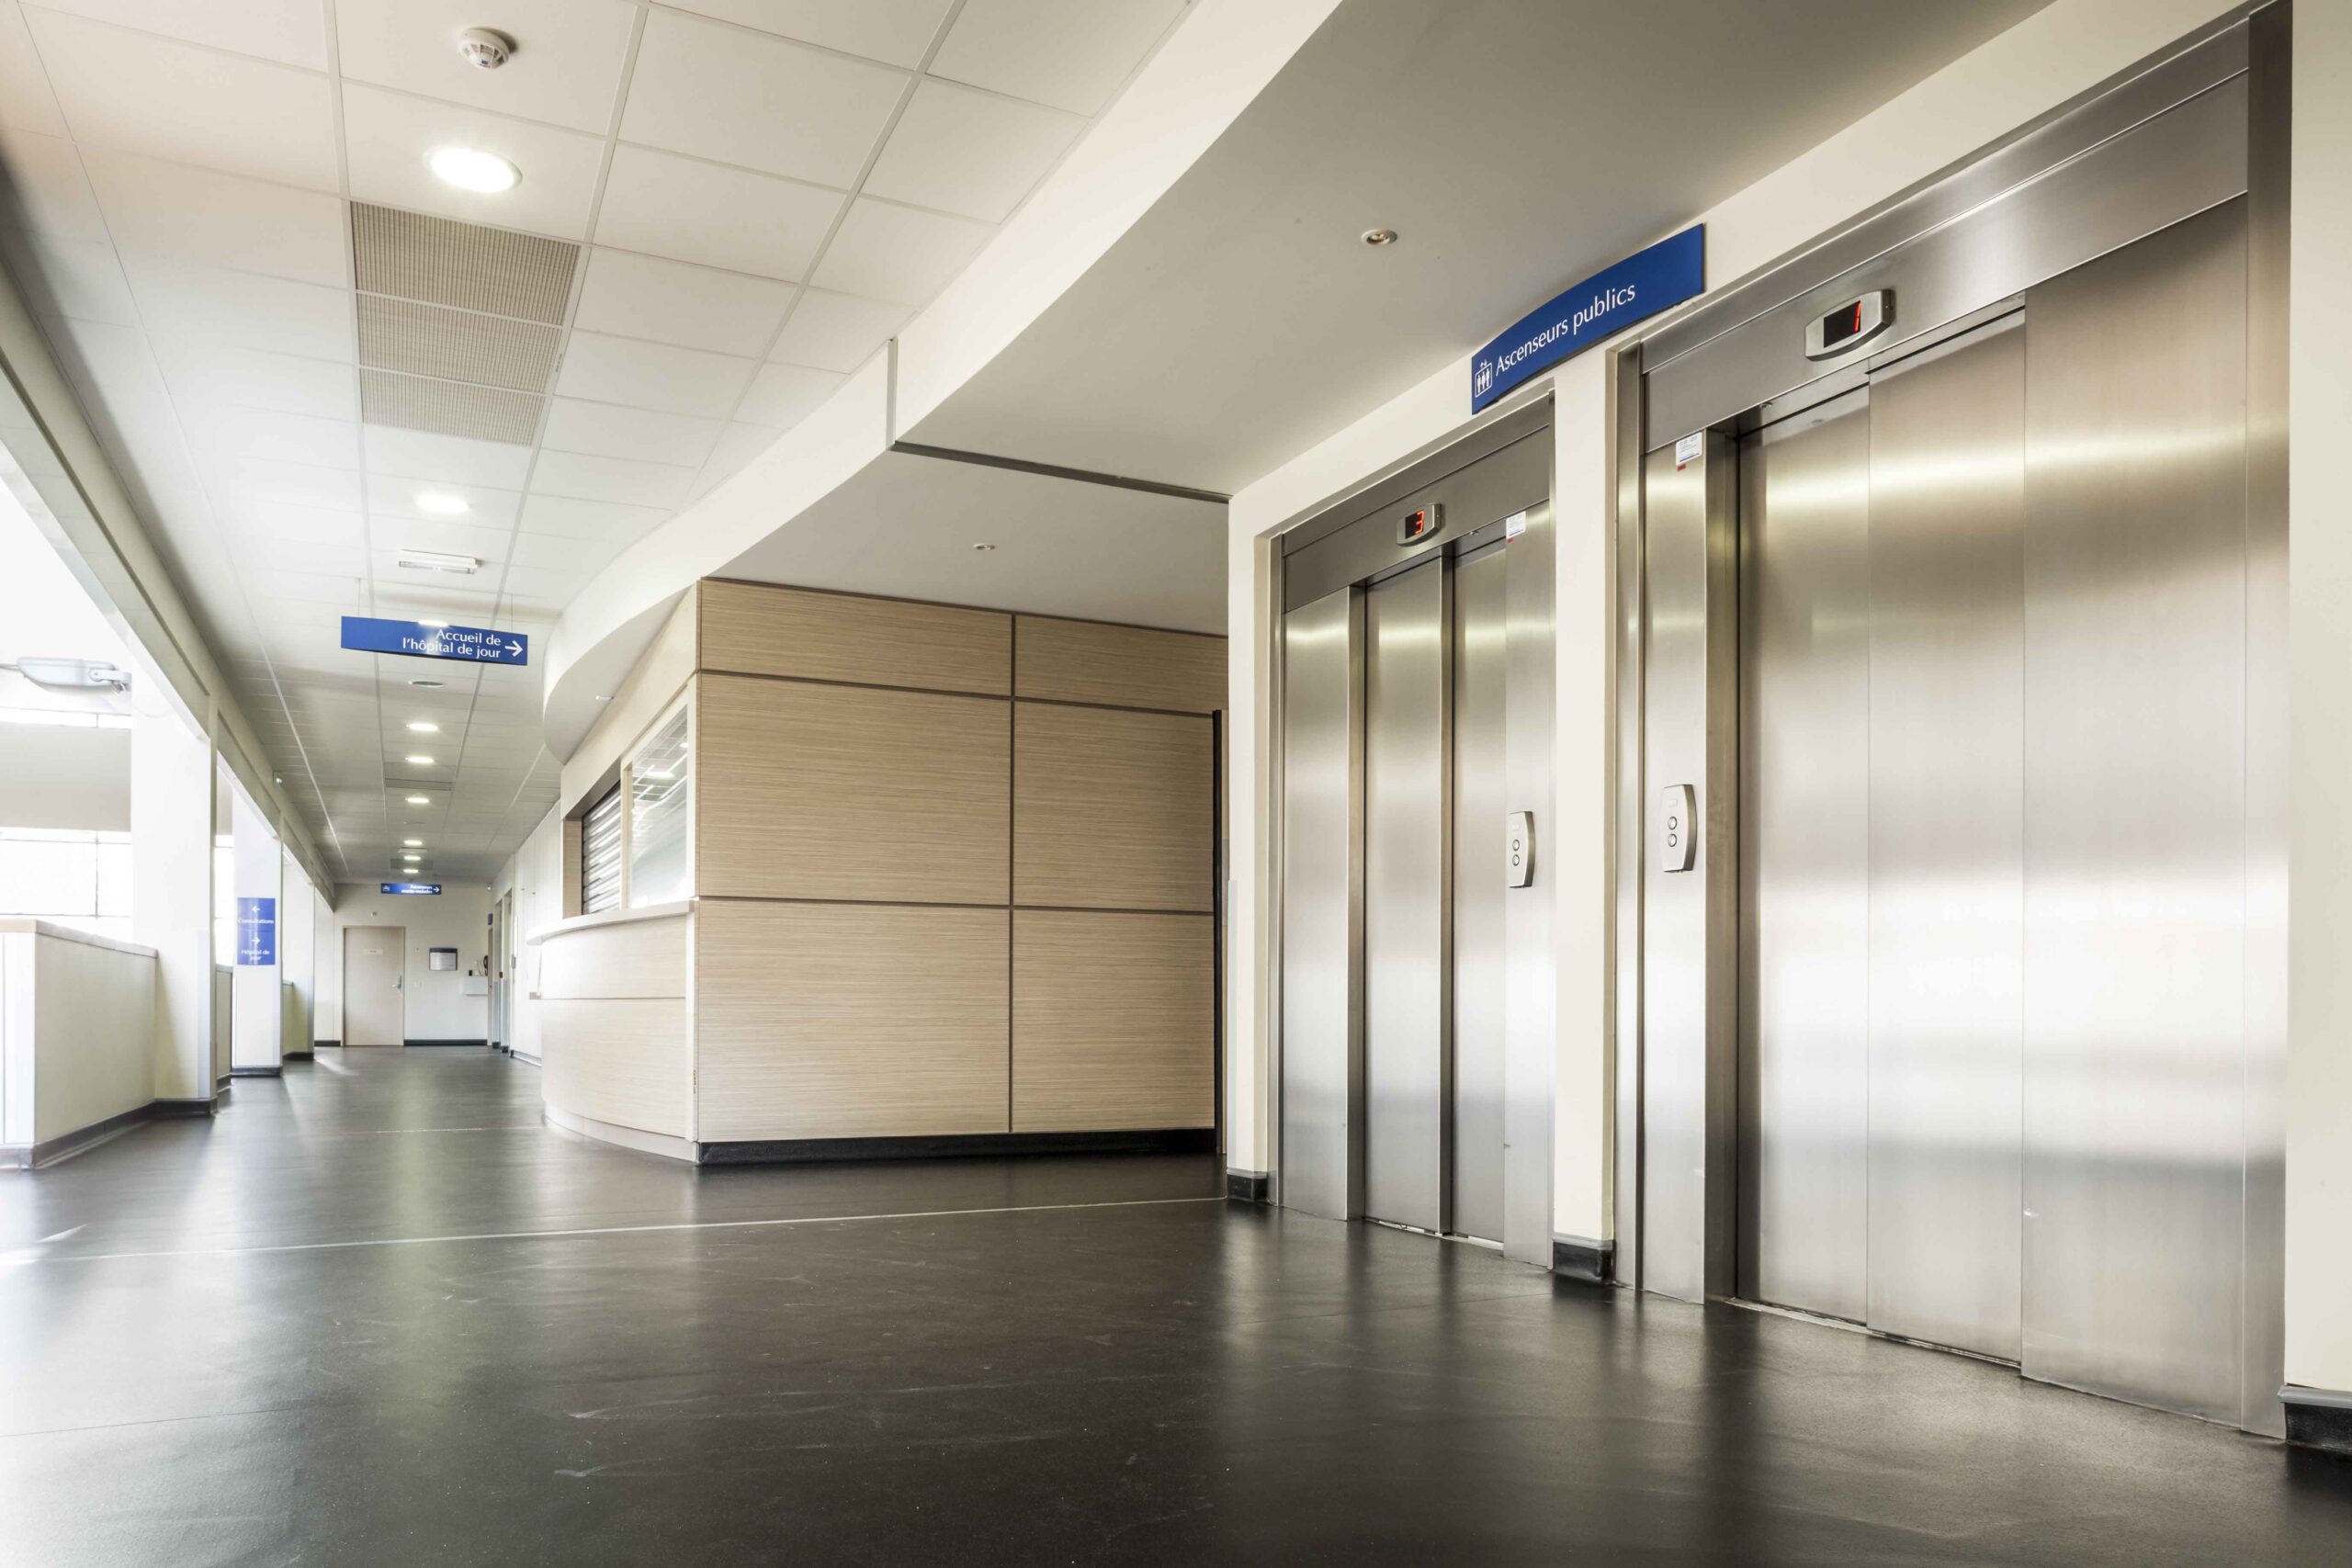 Ascenseurs publics dans un hôpital de CFA Ascenseurs